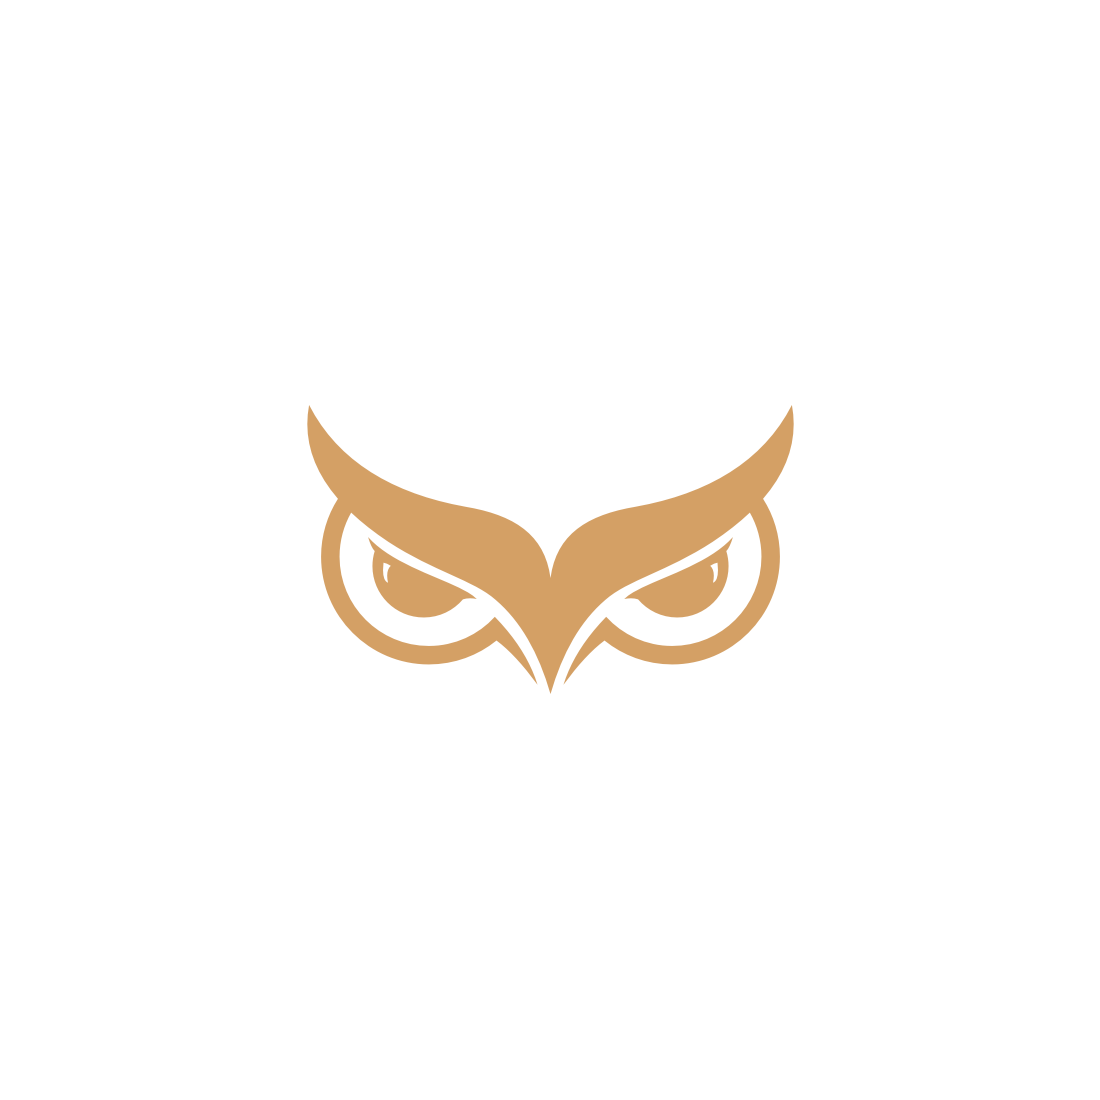 Owl Eye Logo Vector cover image.